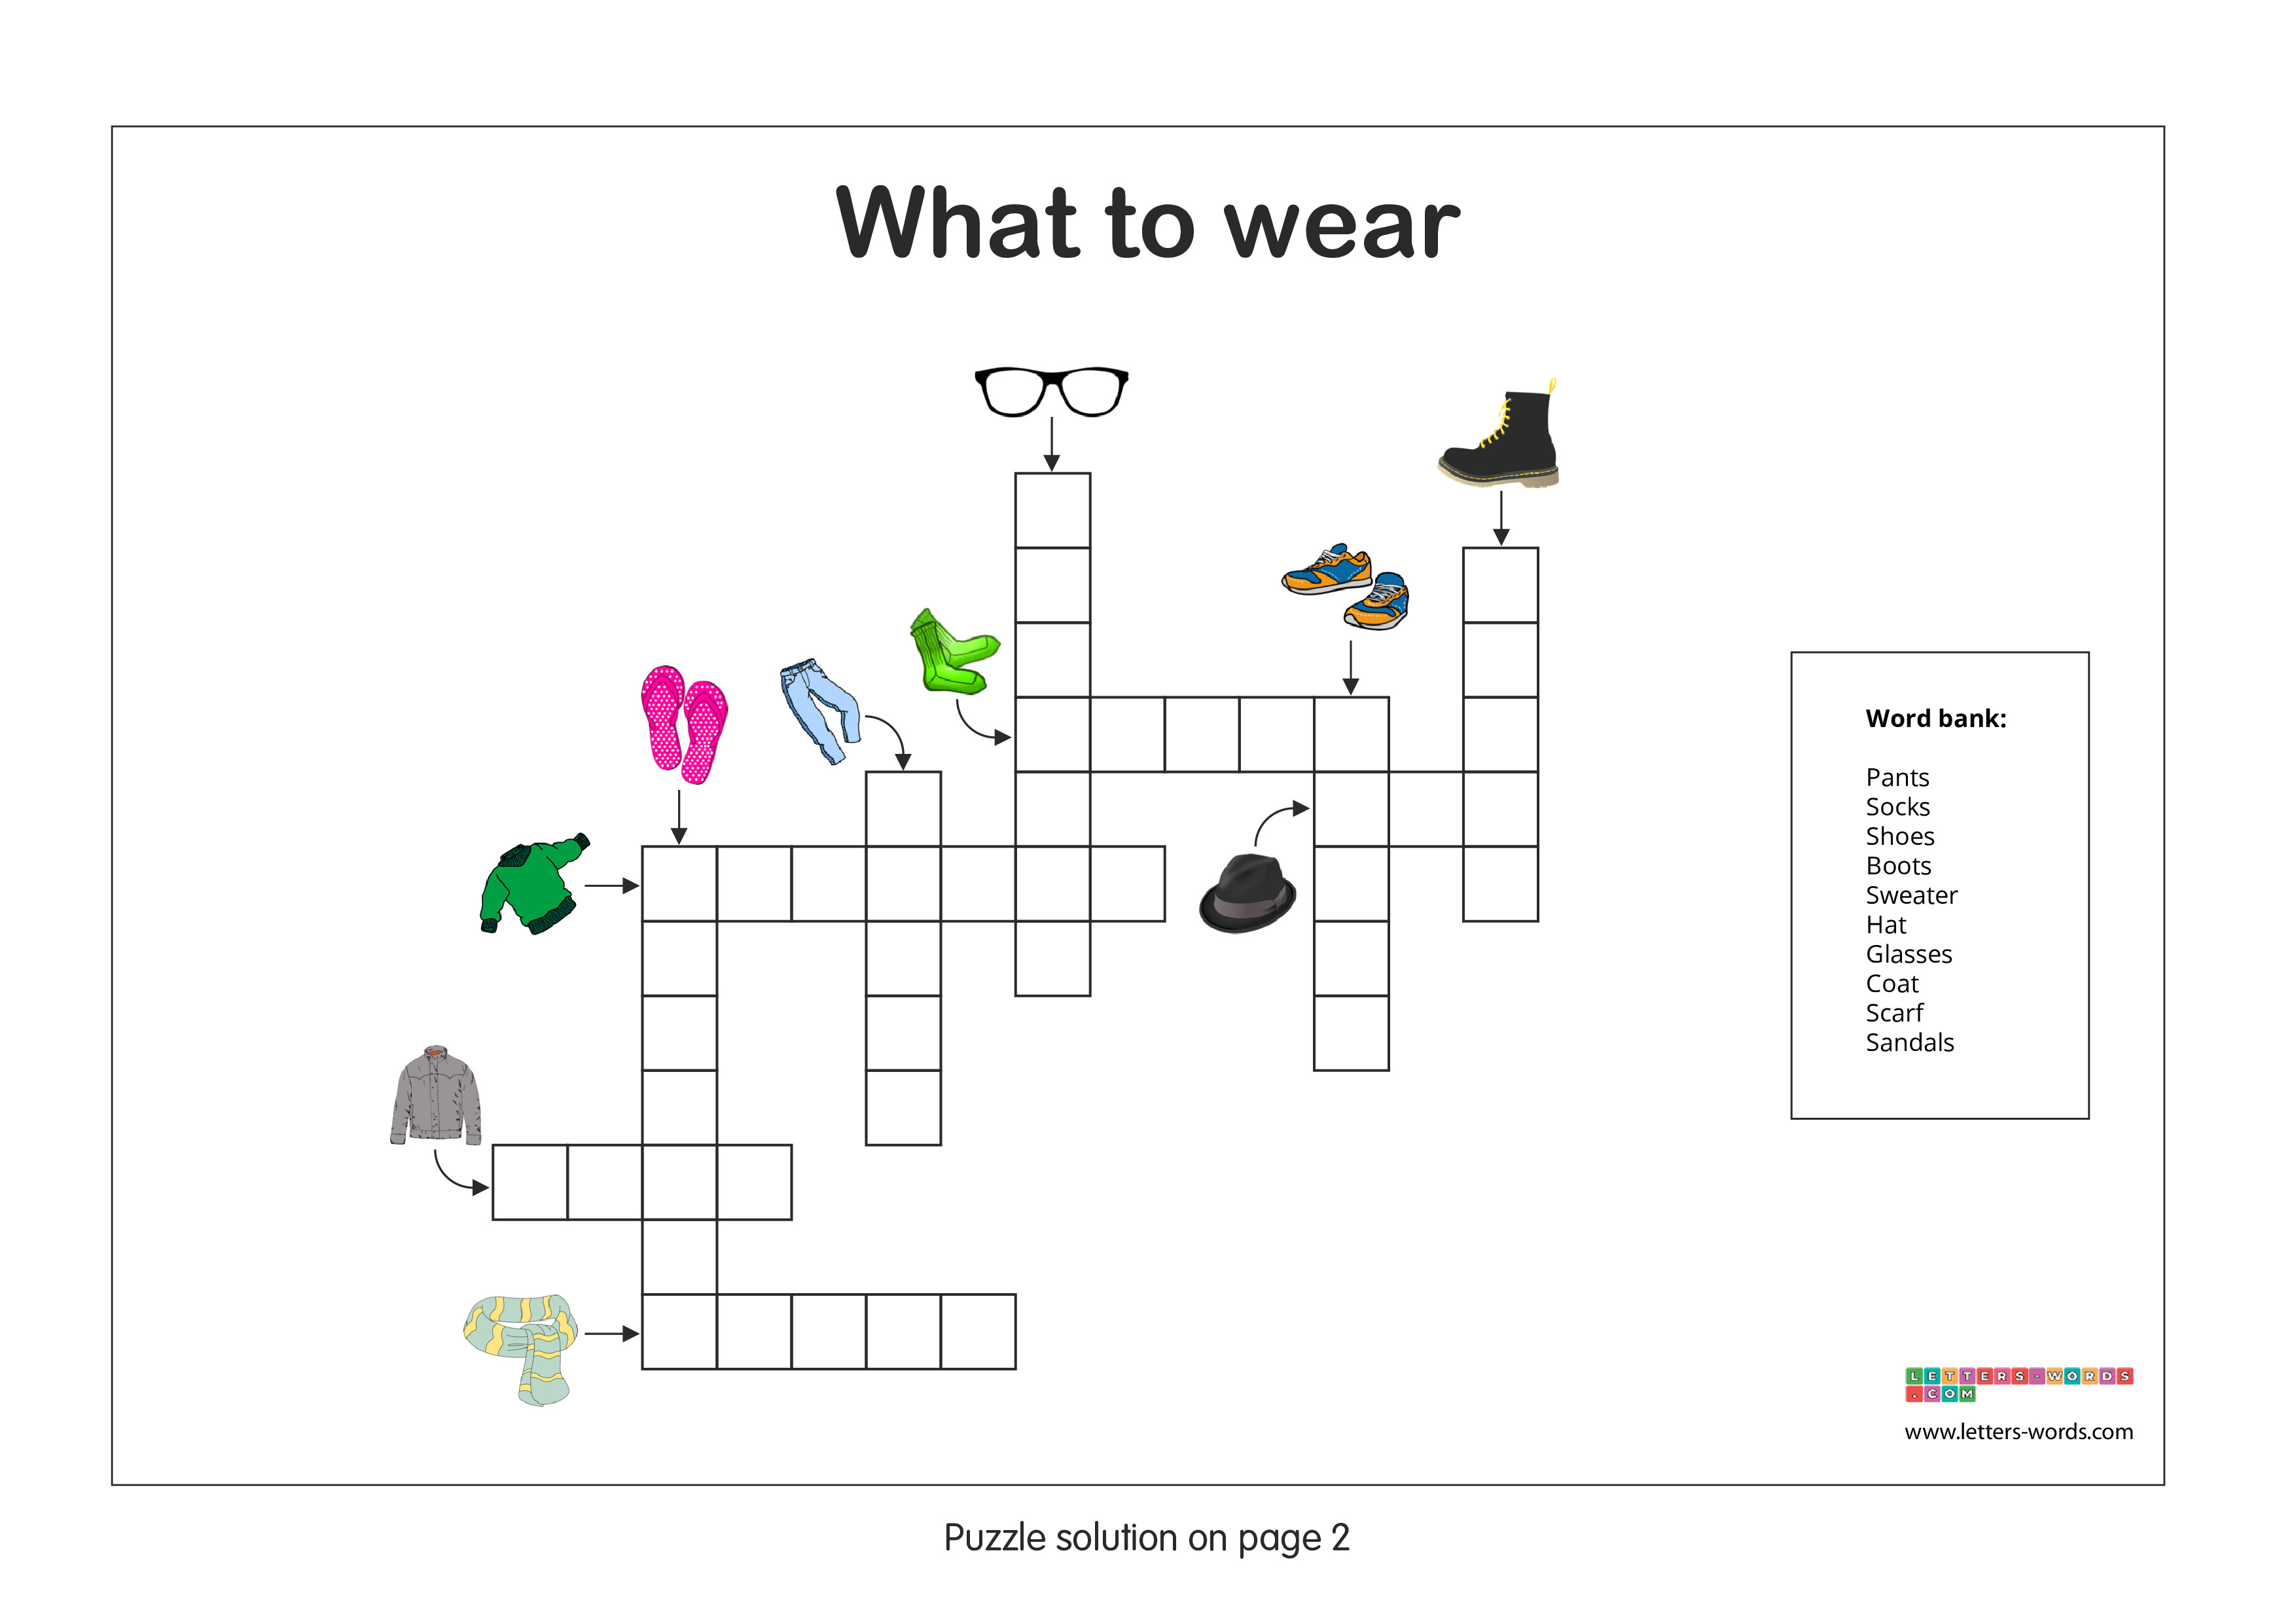 Kindergarten Crossword Puzzle - What to wear